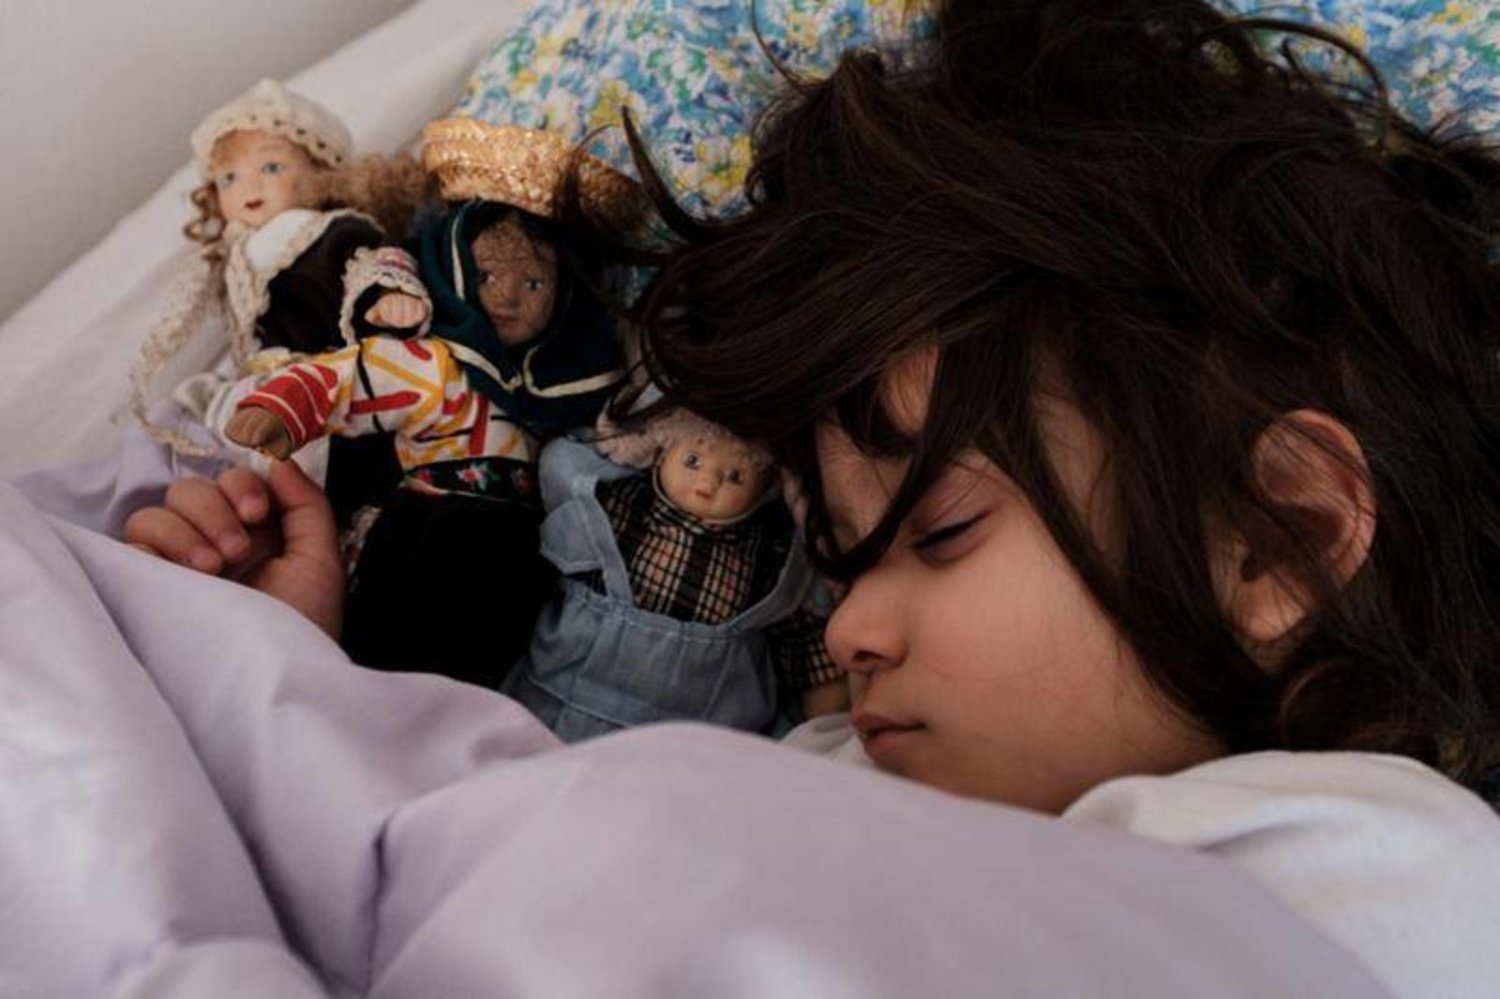 هل يتمتع بعض الأطفال باستعداد وراثي لمشاكل النوم؟